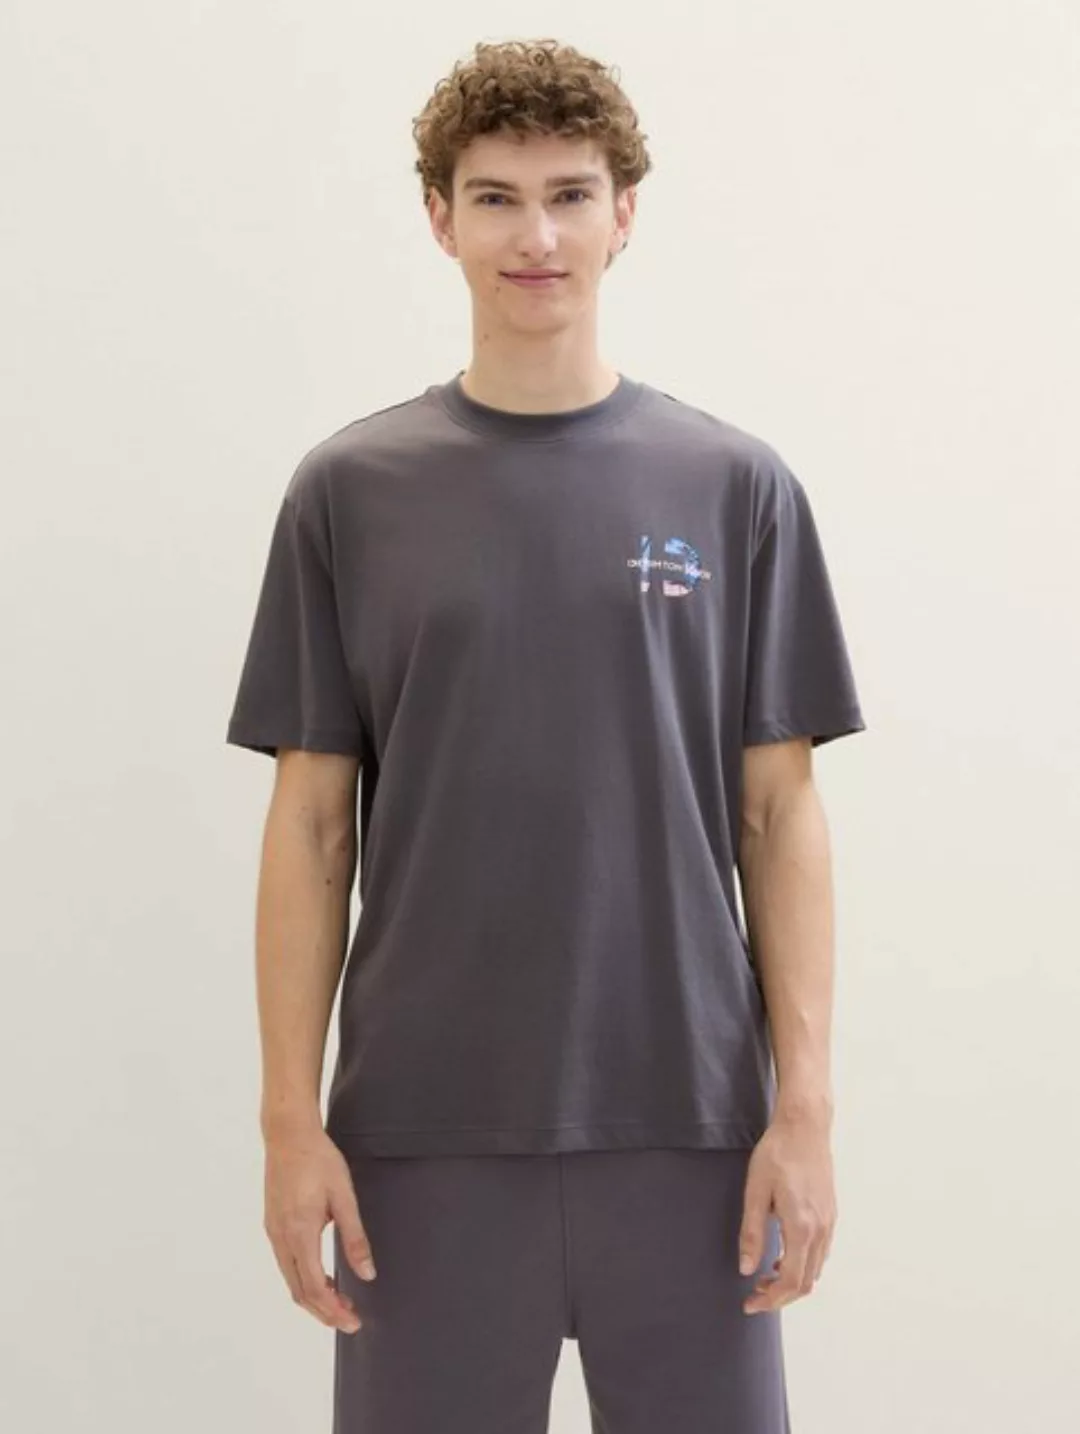 TOM TAILOR Denim T-Shirt T-Shirt mit Fotoprint günstig online kaufen